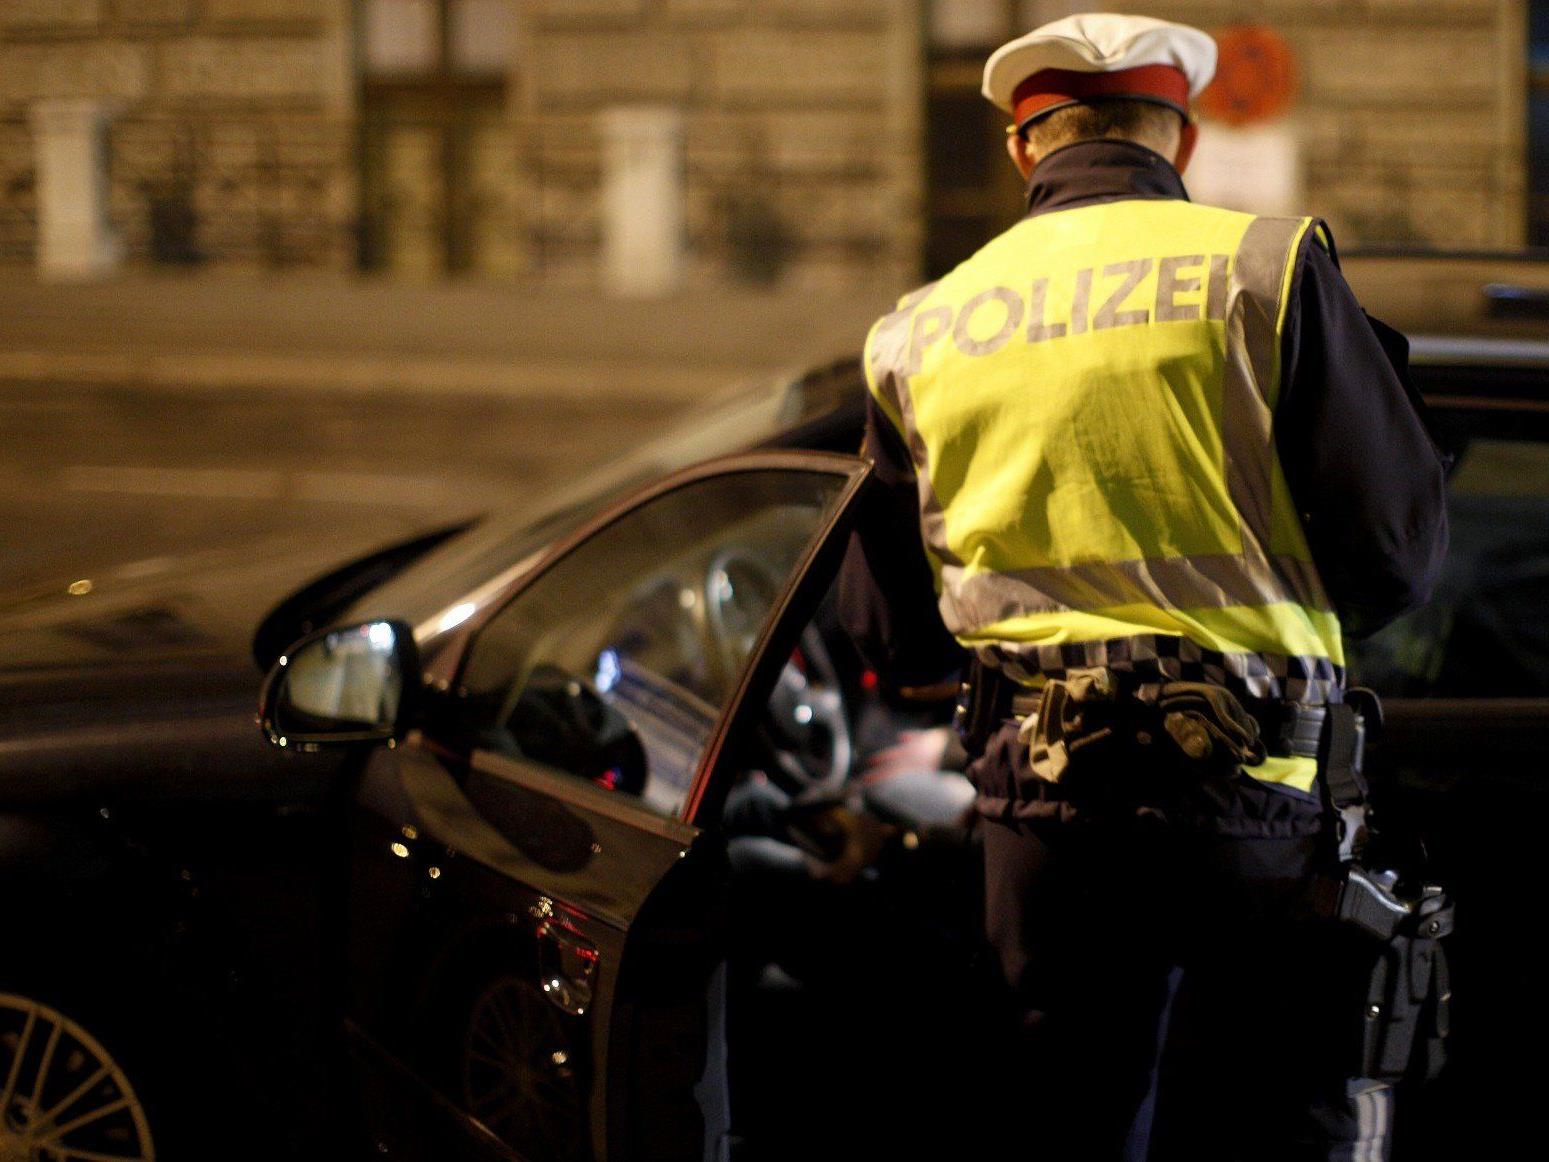 Alkotest verweigert und mehrere Knochenbrüche: Ein Wiener Polizist muss such vor dem UVS verantworten.